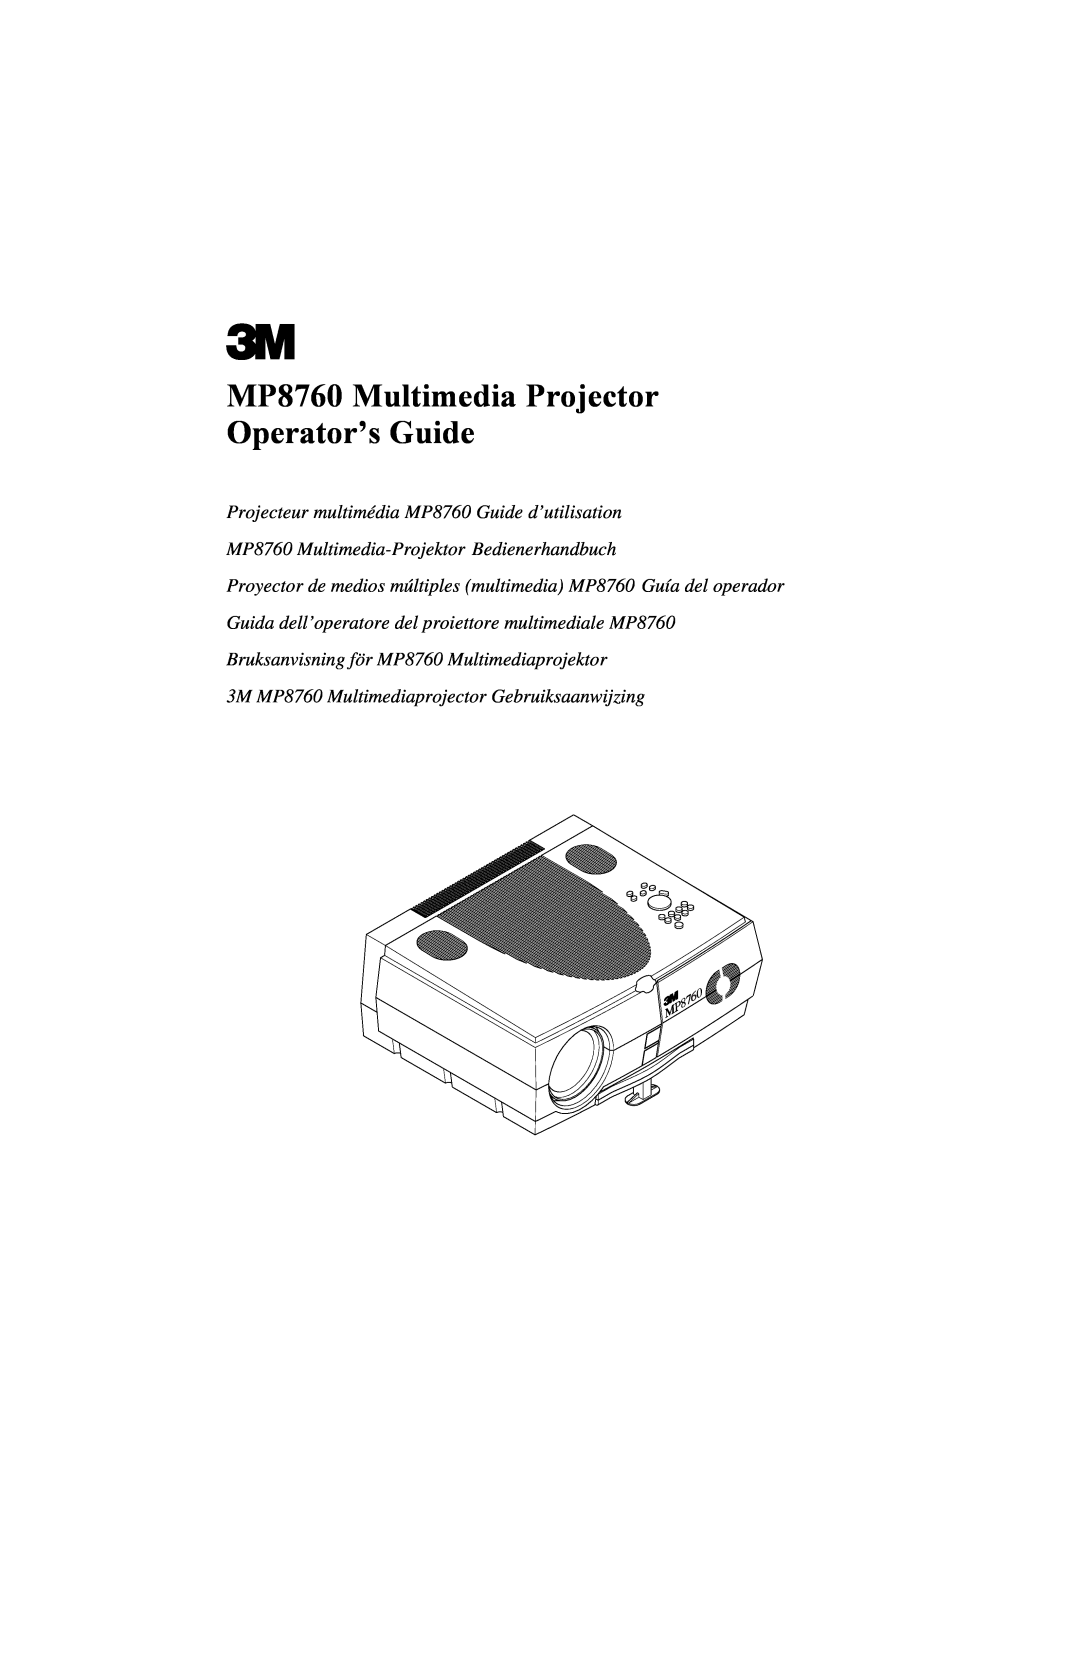 3M manual MP8760 Multimedia Projector Operator’s Guide, Projecteur multimédia MP8760 Guide d’utilisation 